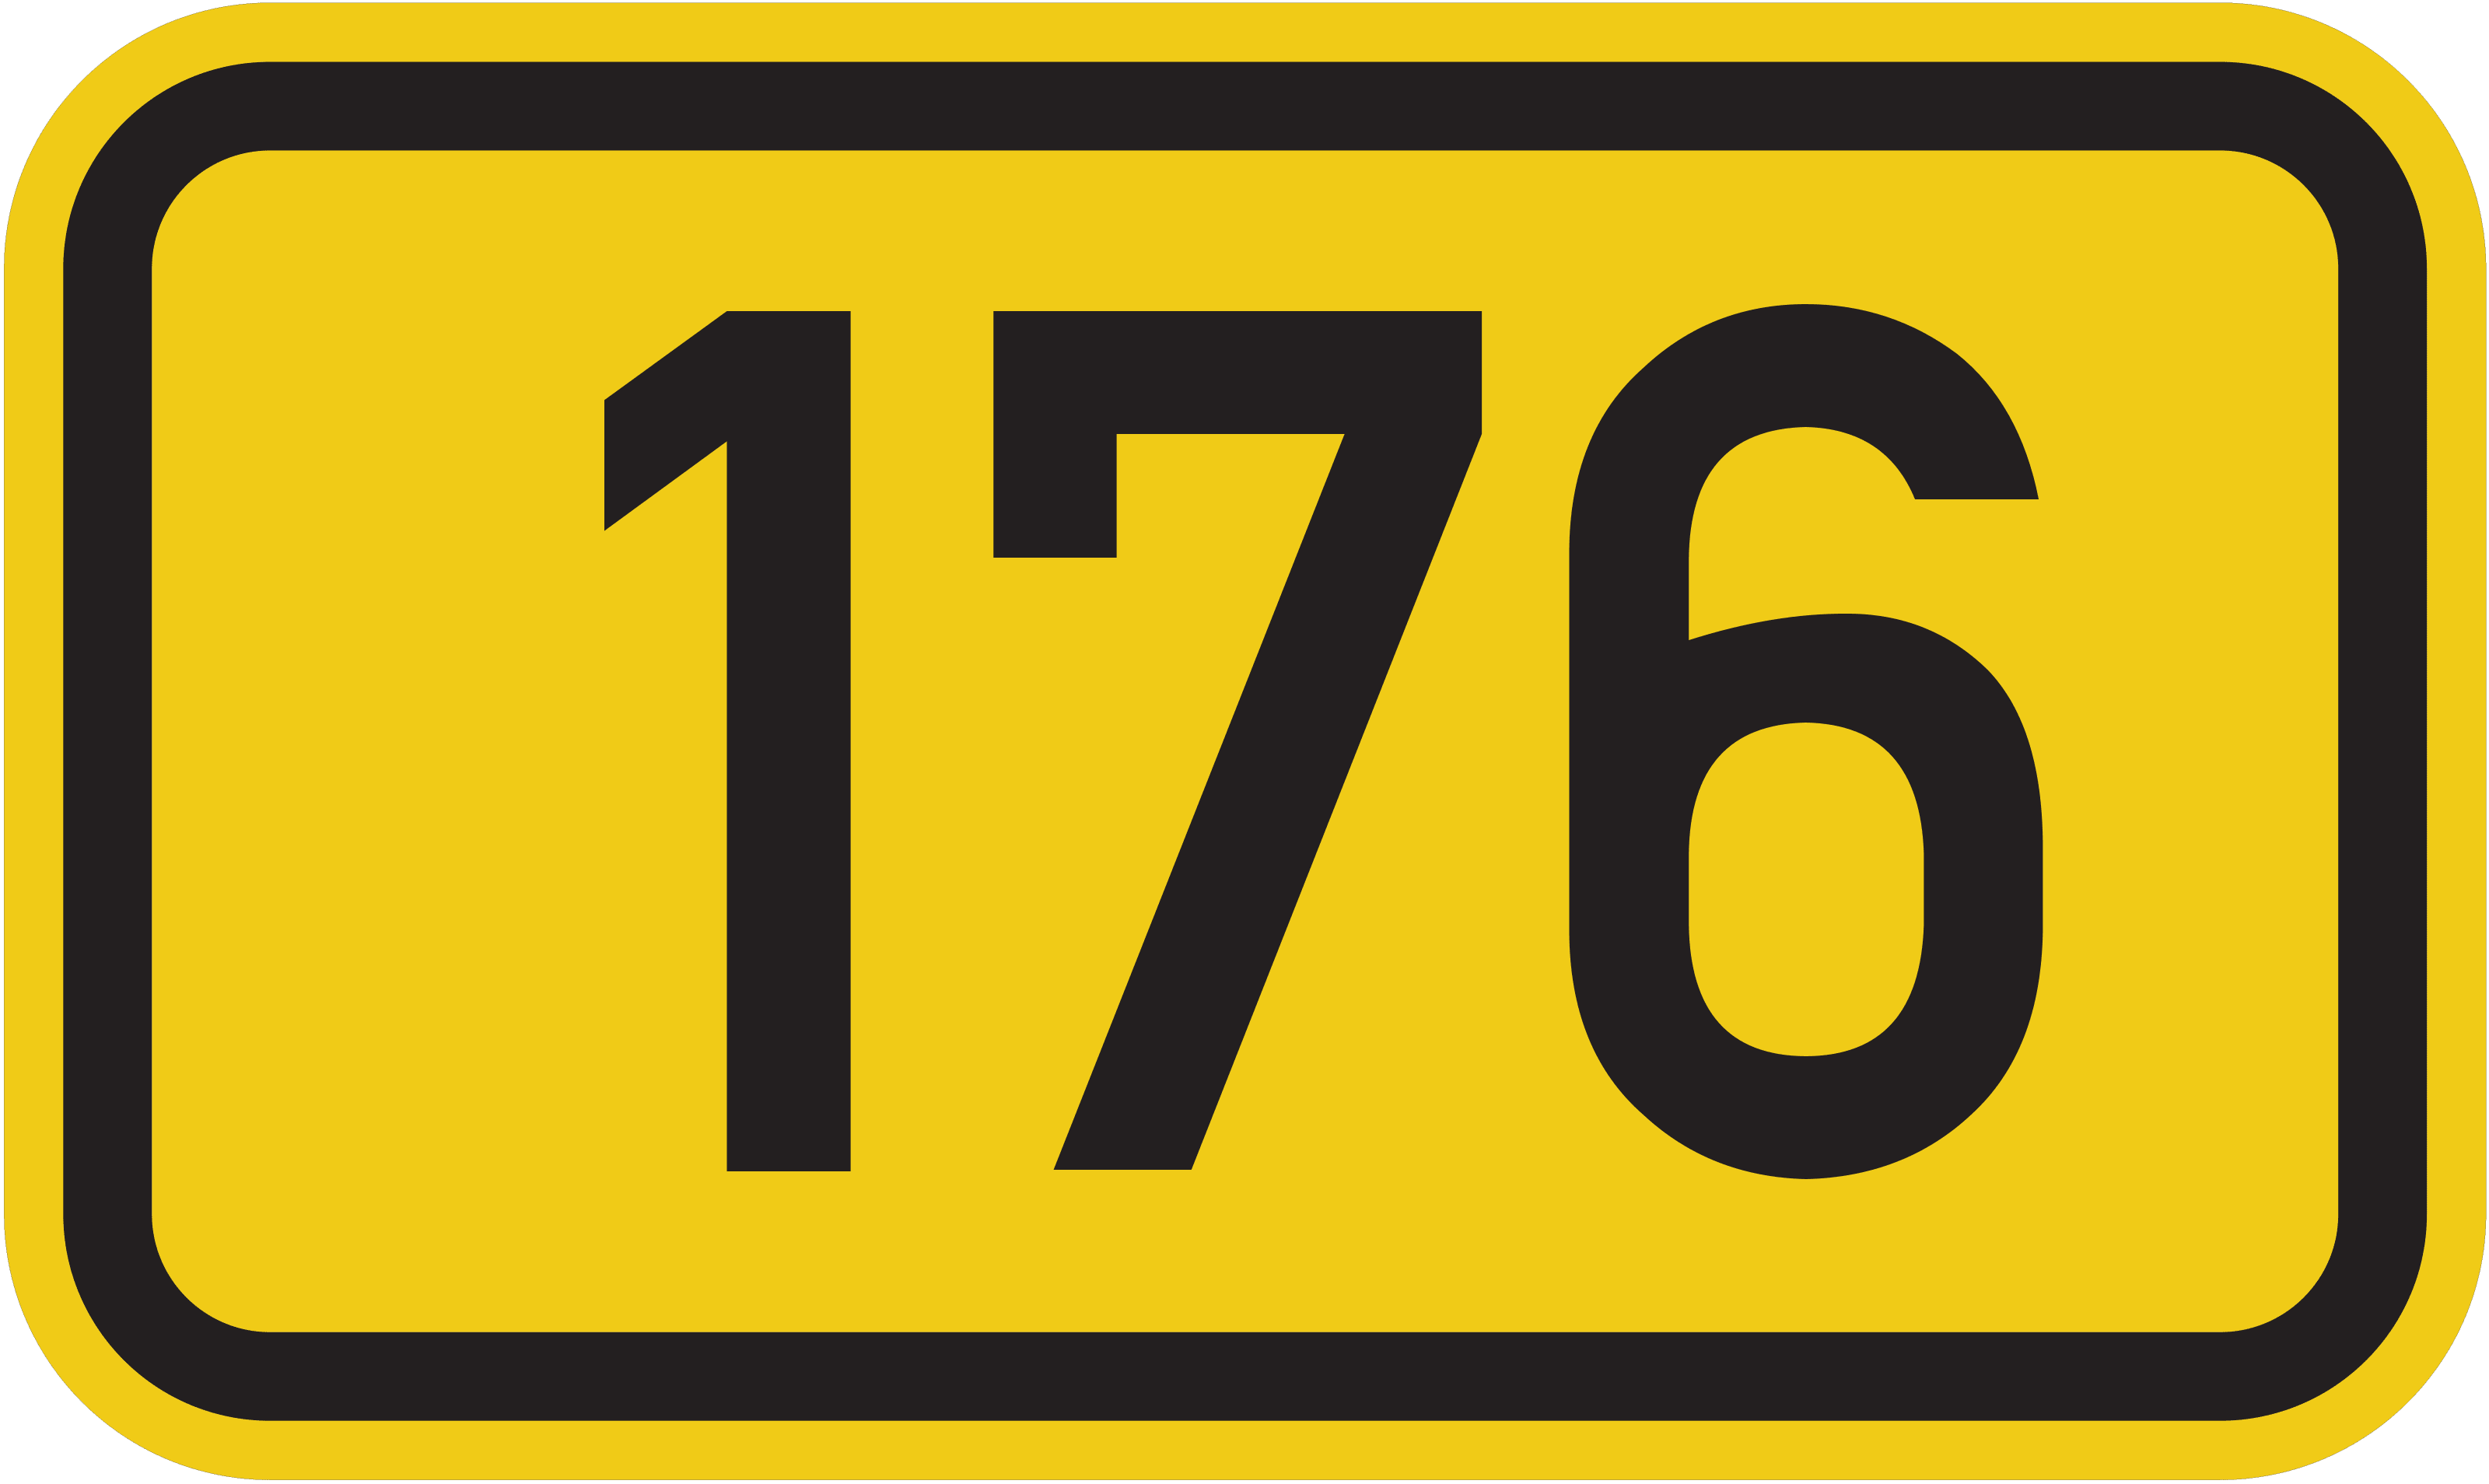 Bundesstraße 176